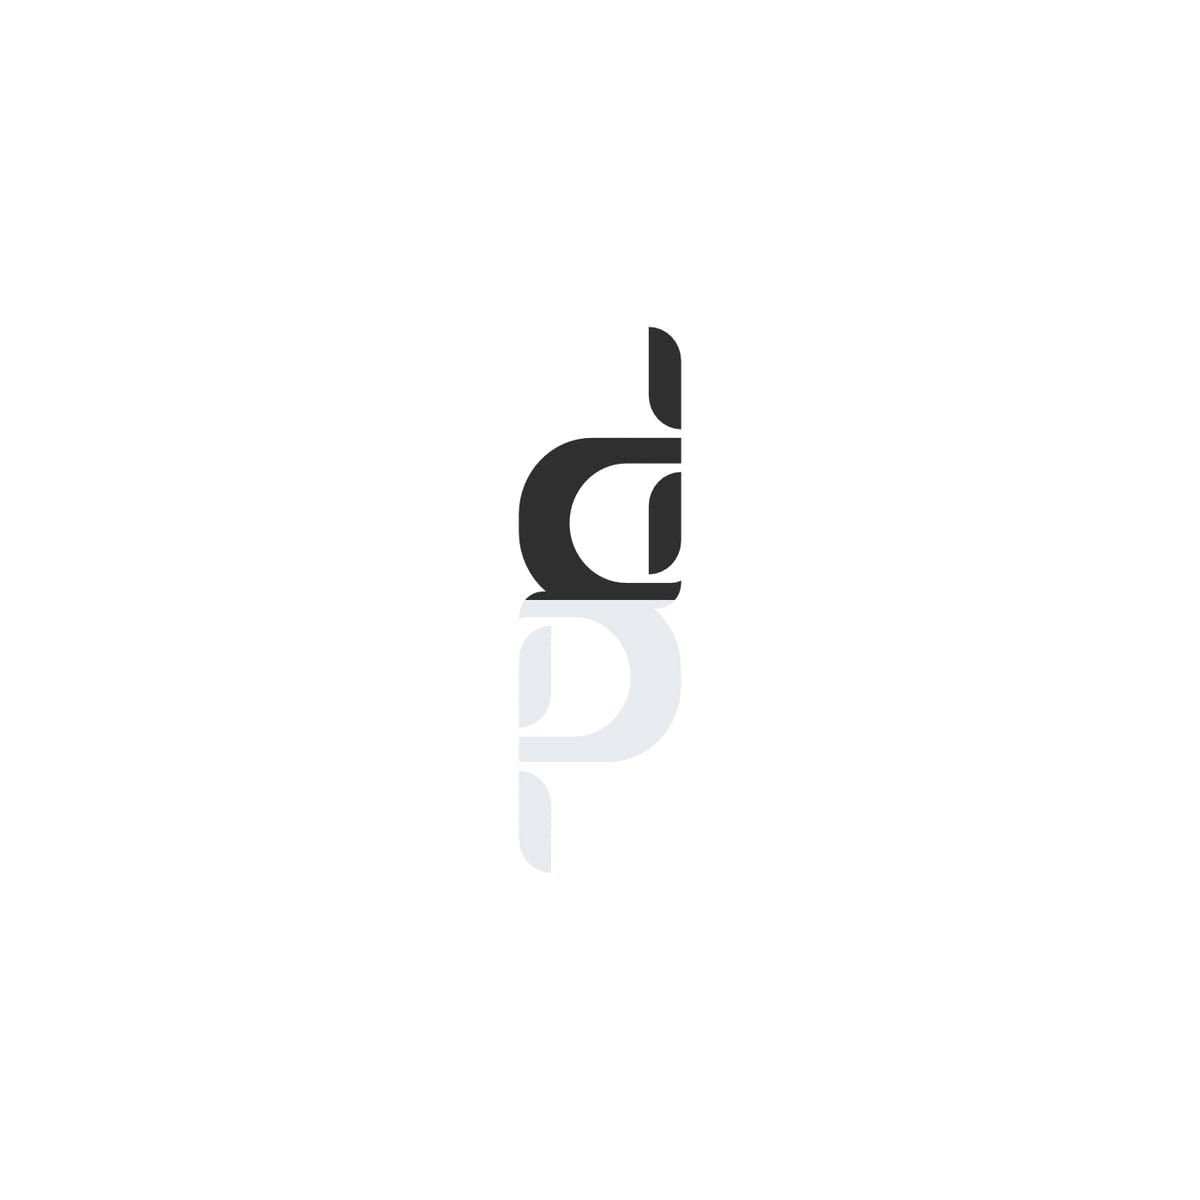 ambigram brand brand identity branding  identity logo Logo Design Logotype monogram visual identity